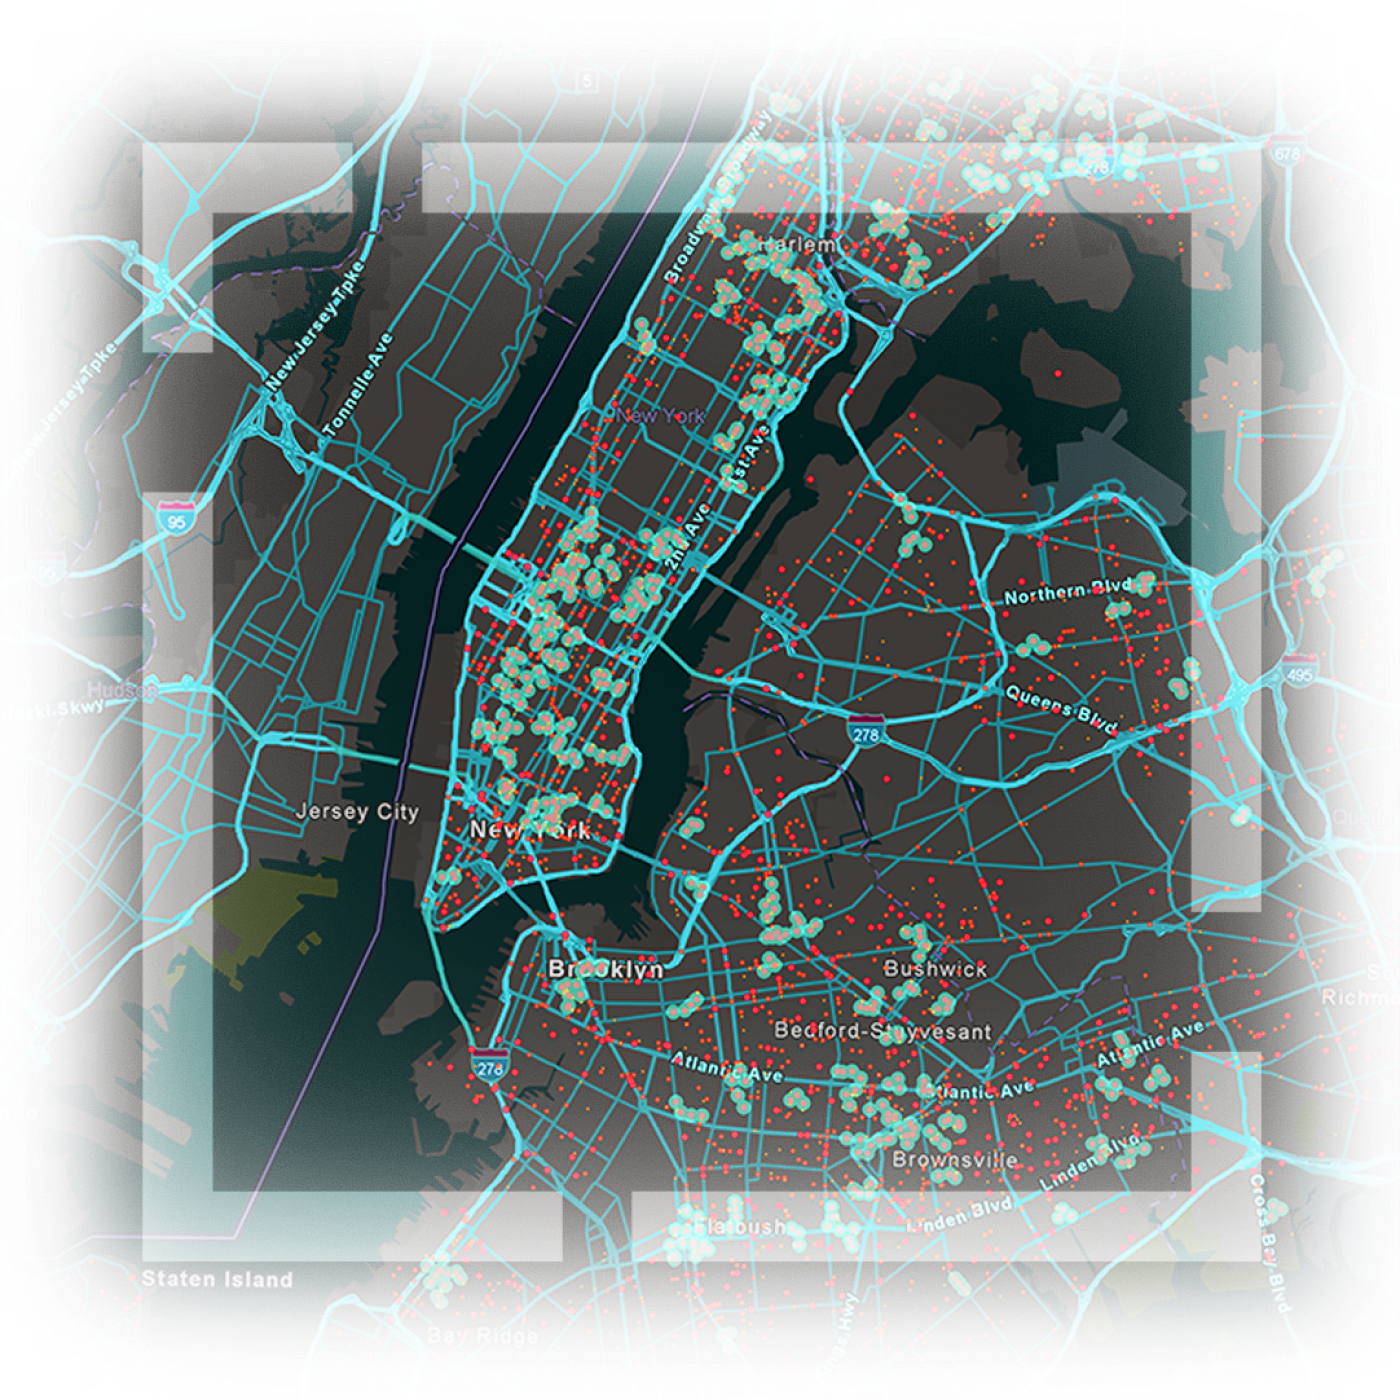 خريطة لمدينة نيويورك توضح الطرق السريعة والطرق ومواقع الأصول محددة بخطوط باللونين الأزرق والأحمر خريطة لمدينة نيويورك توضح الطرق السريعة والطرق ومواقع الأصول محددة بخطوط باللونين الأزرق والأحمر